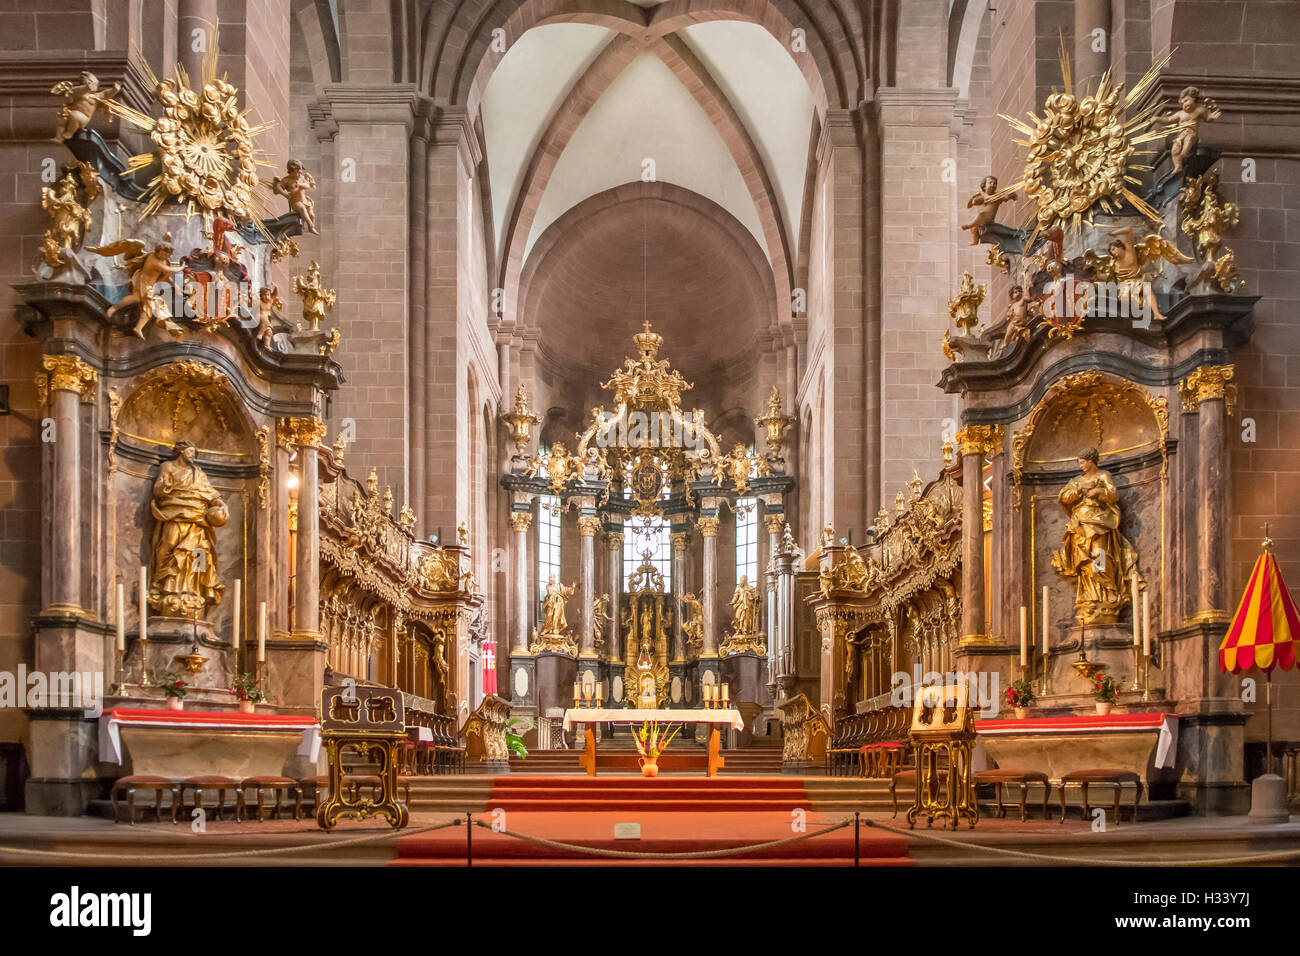 Chor und Altar in St. Peters Dom, Worms, Rheinland Pfalz, Deutschland Stockfoto